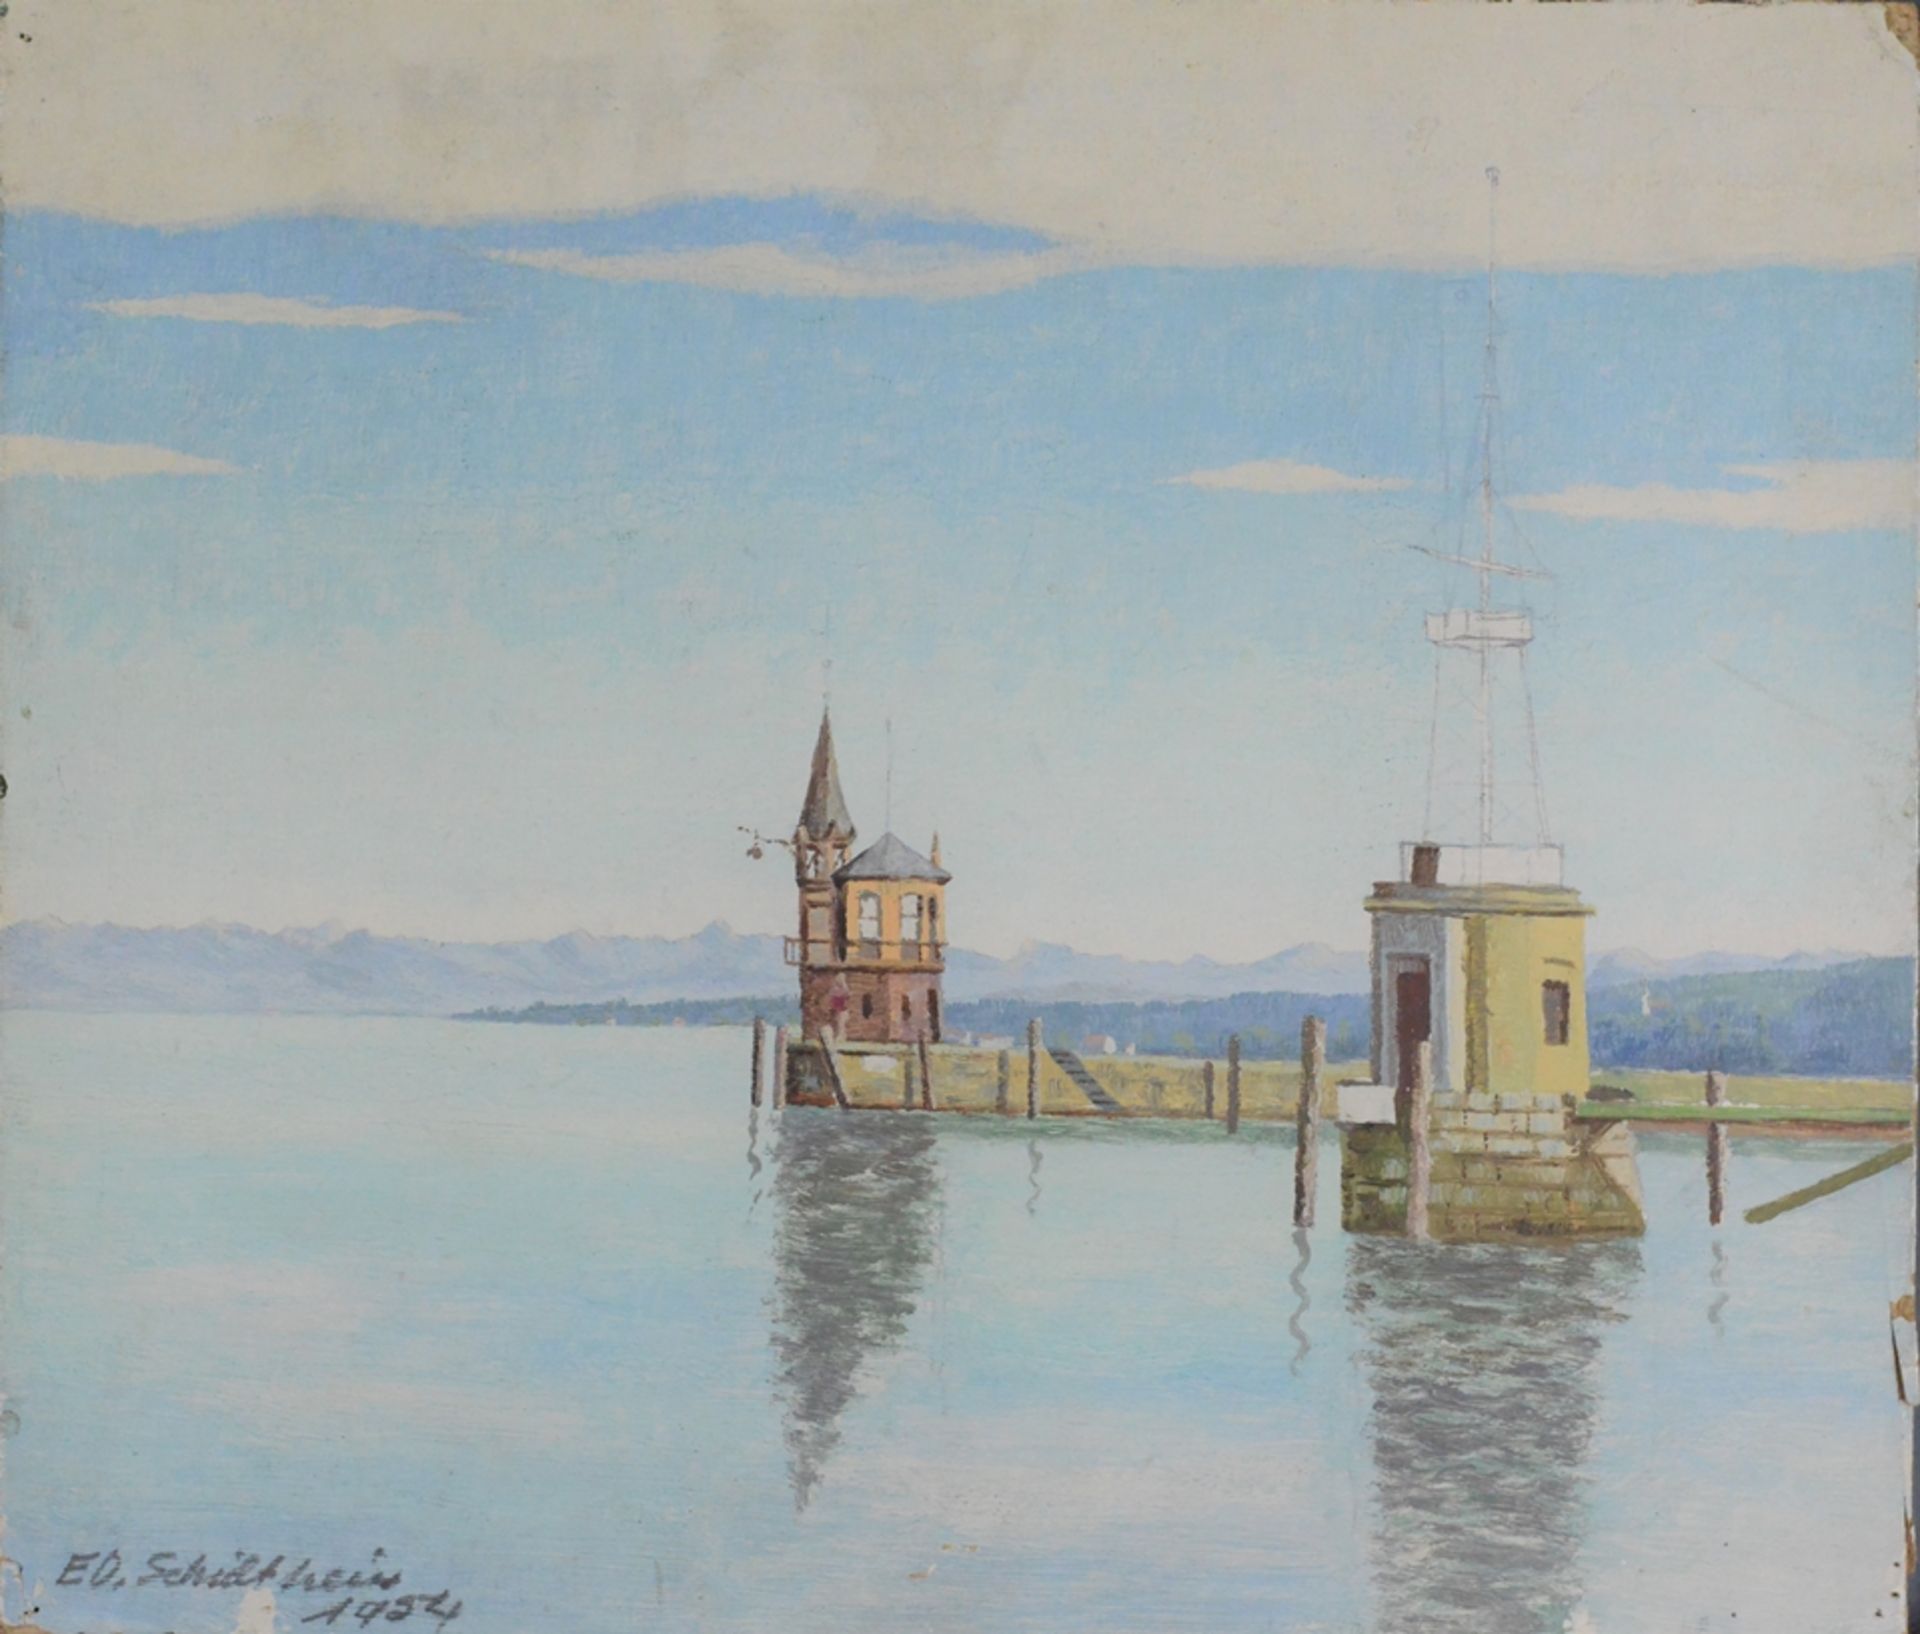 Schultheiss, ED. (Bodenseemaler, 20. Jahrhundert) "Alter Hafenturm Konstanz", Blick auf das Molehäu